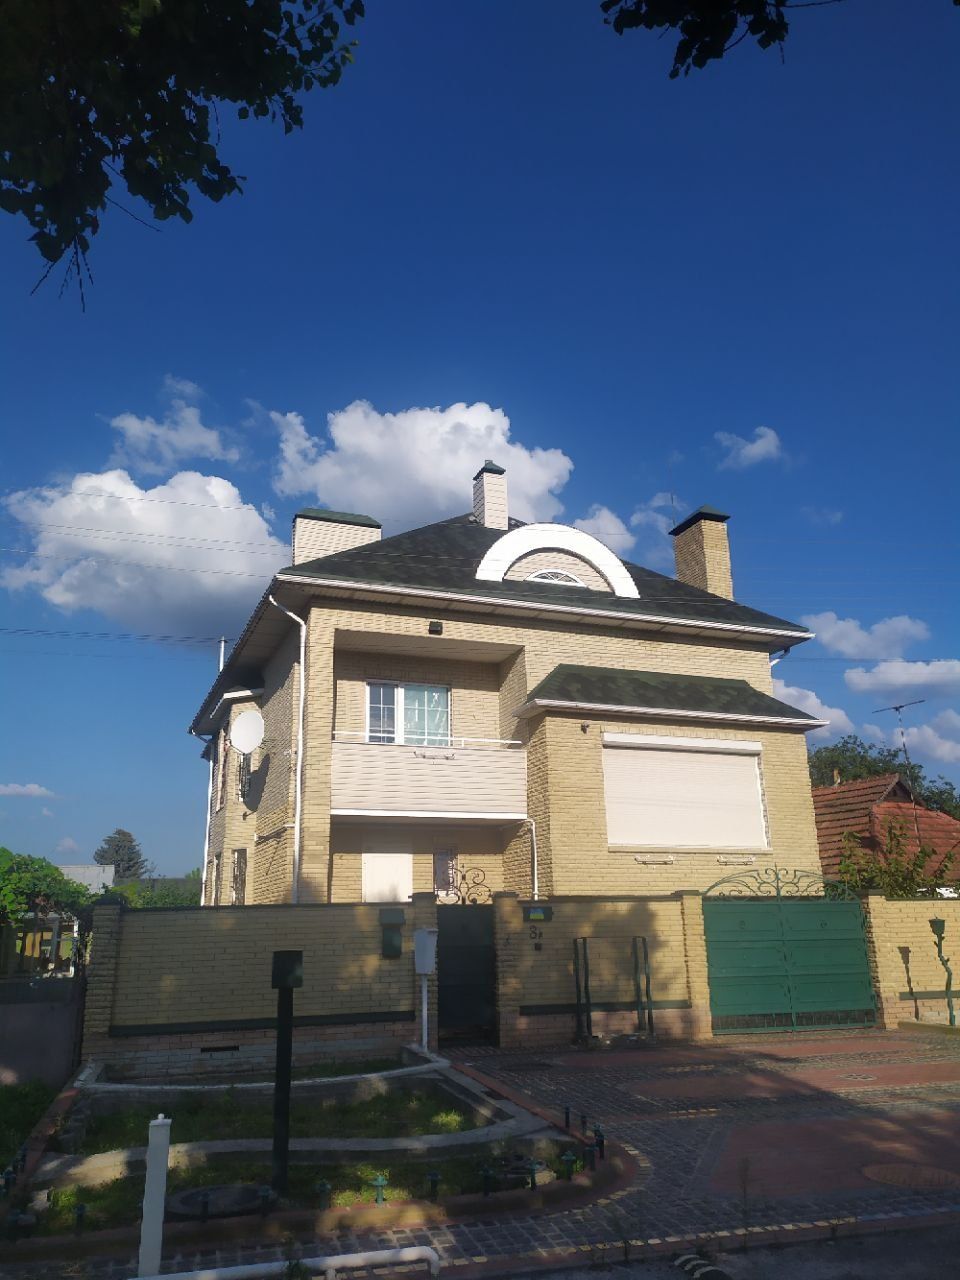 Продам будинок в районі Розсошенці (м.Полтава)